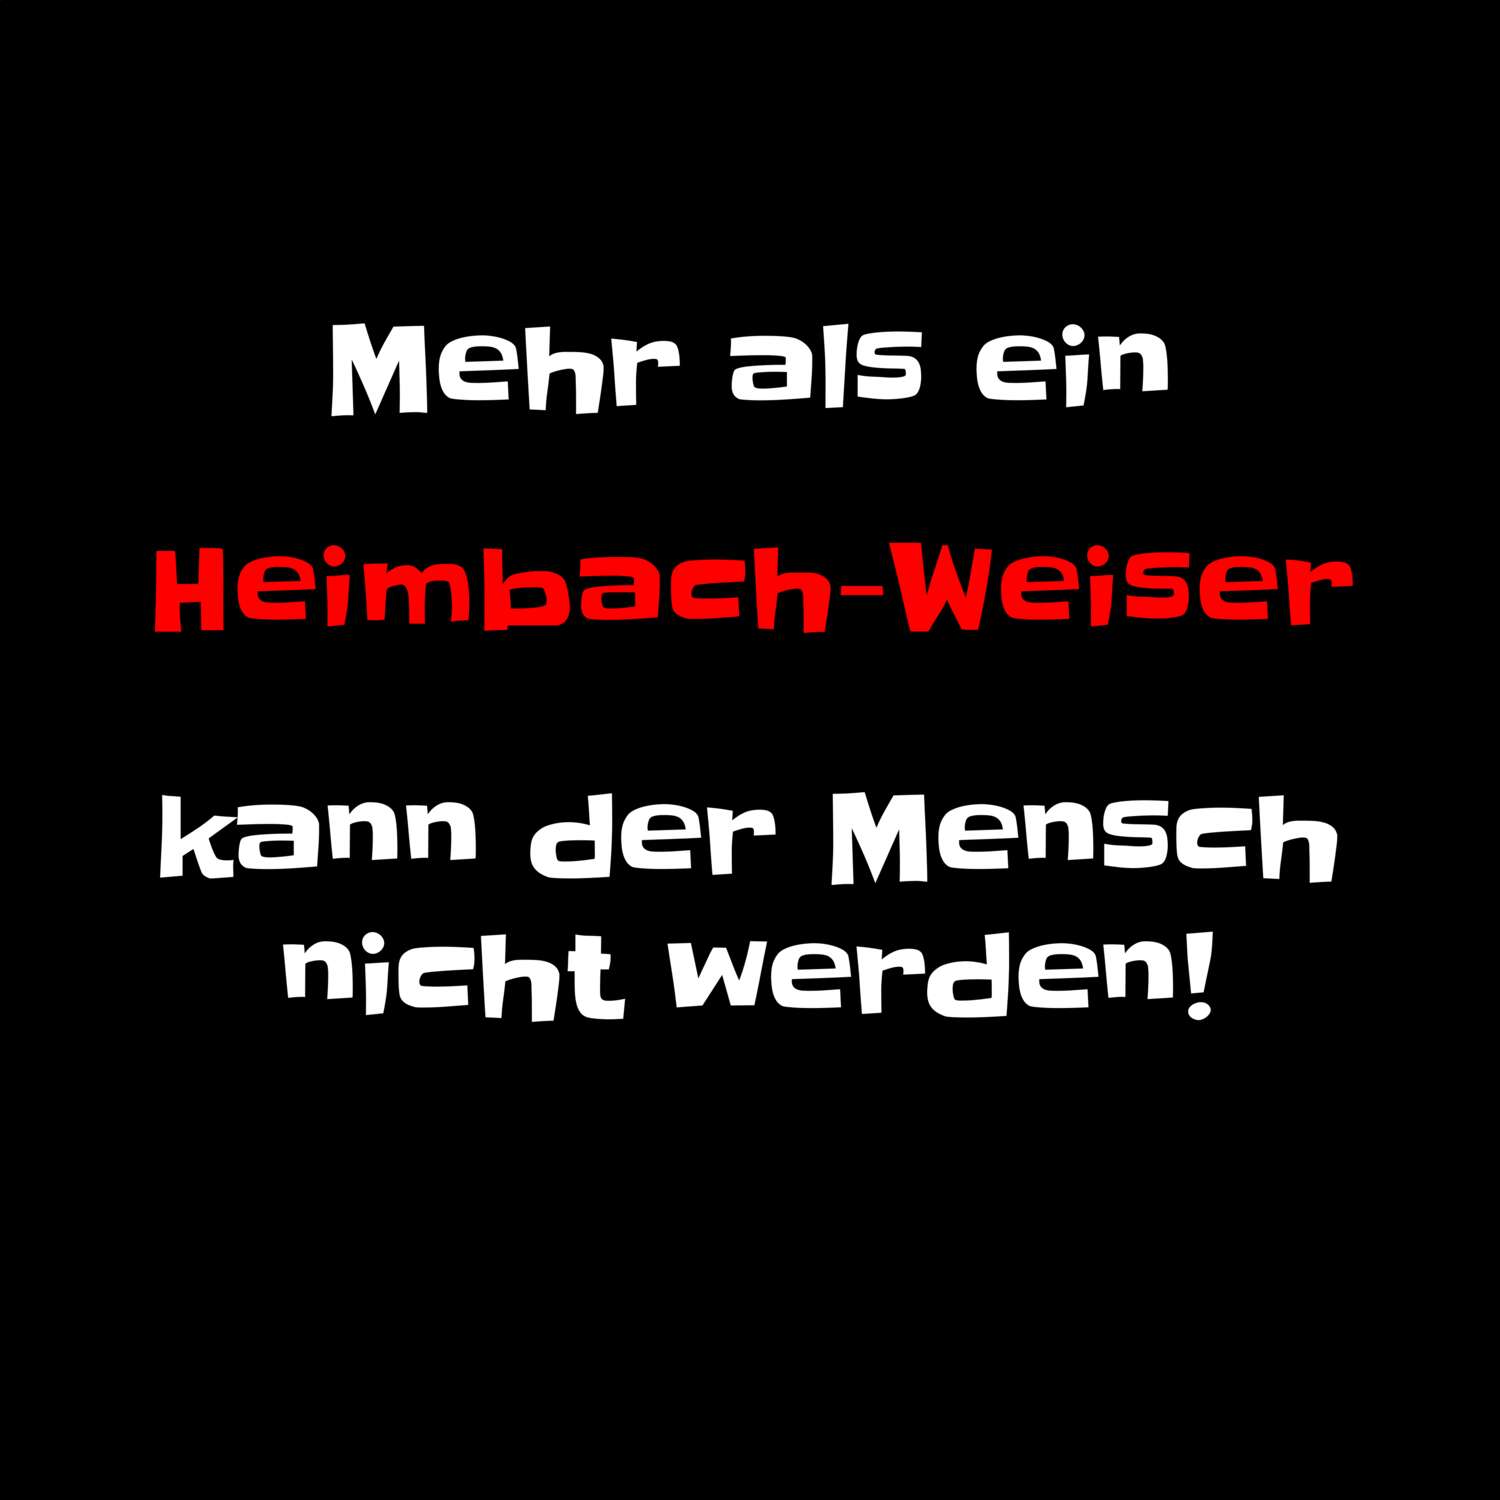 Heimbach-Weis T-Shirt »Mehr als ein«